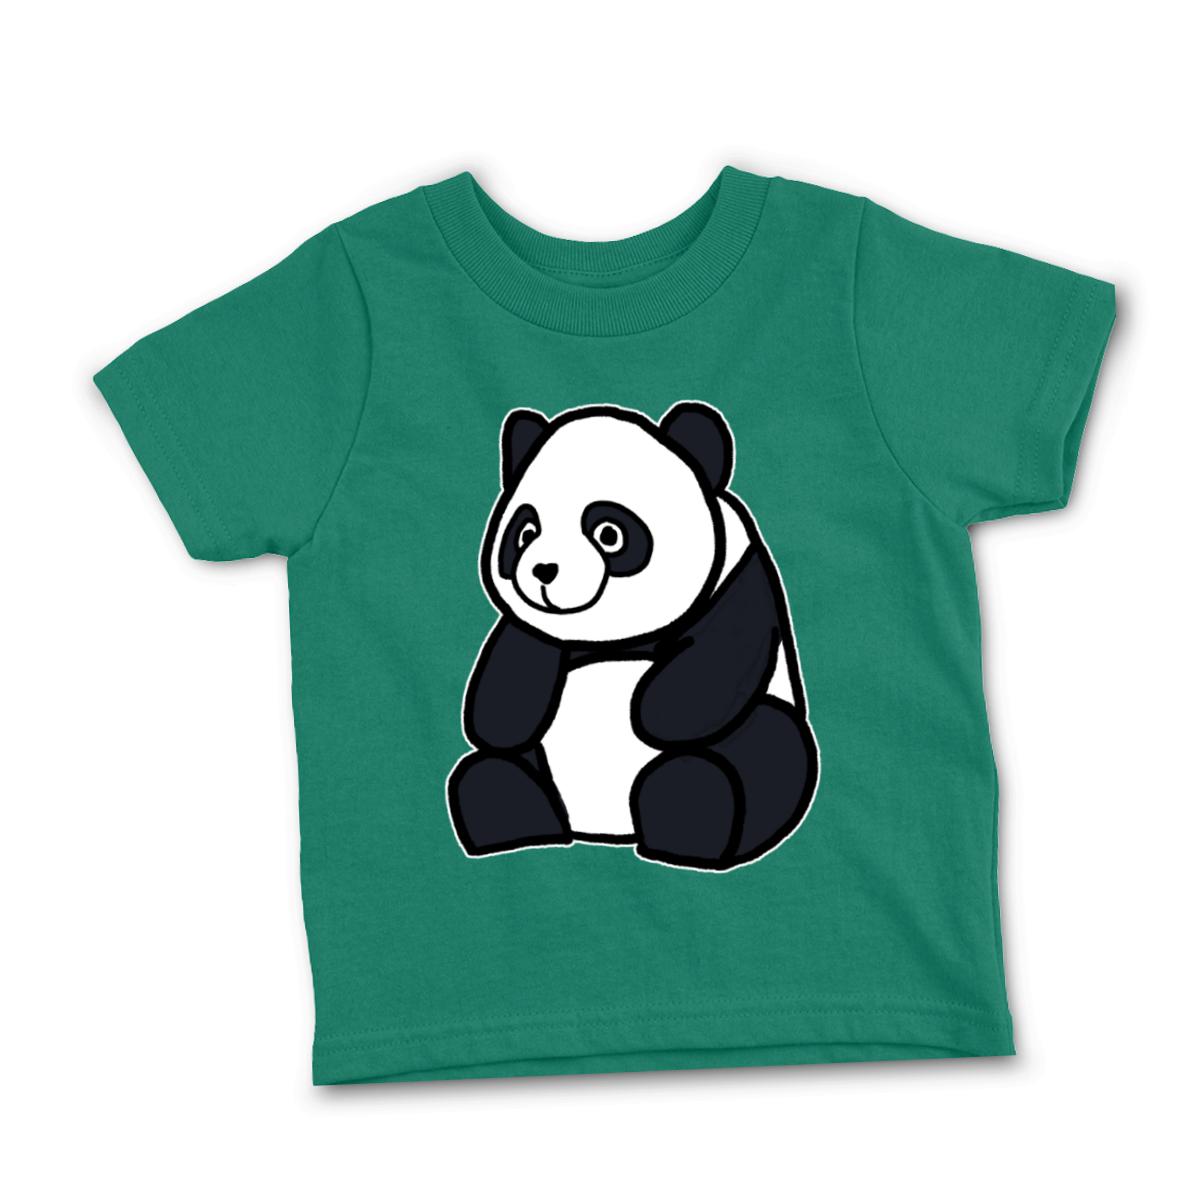 Panda Toddler Tee 56T kelly